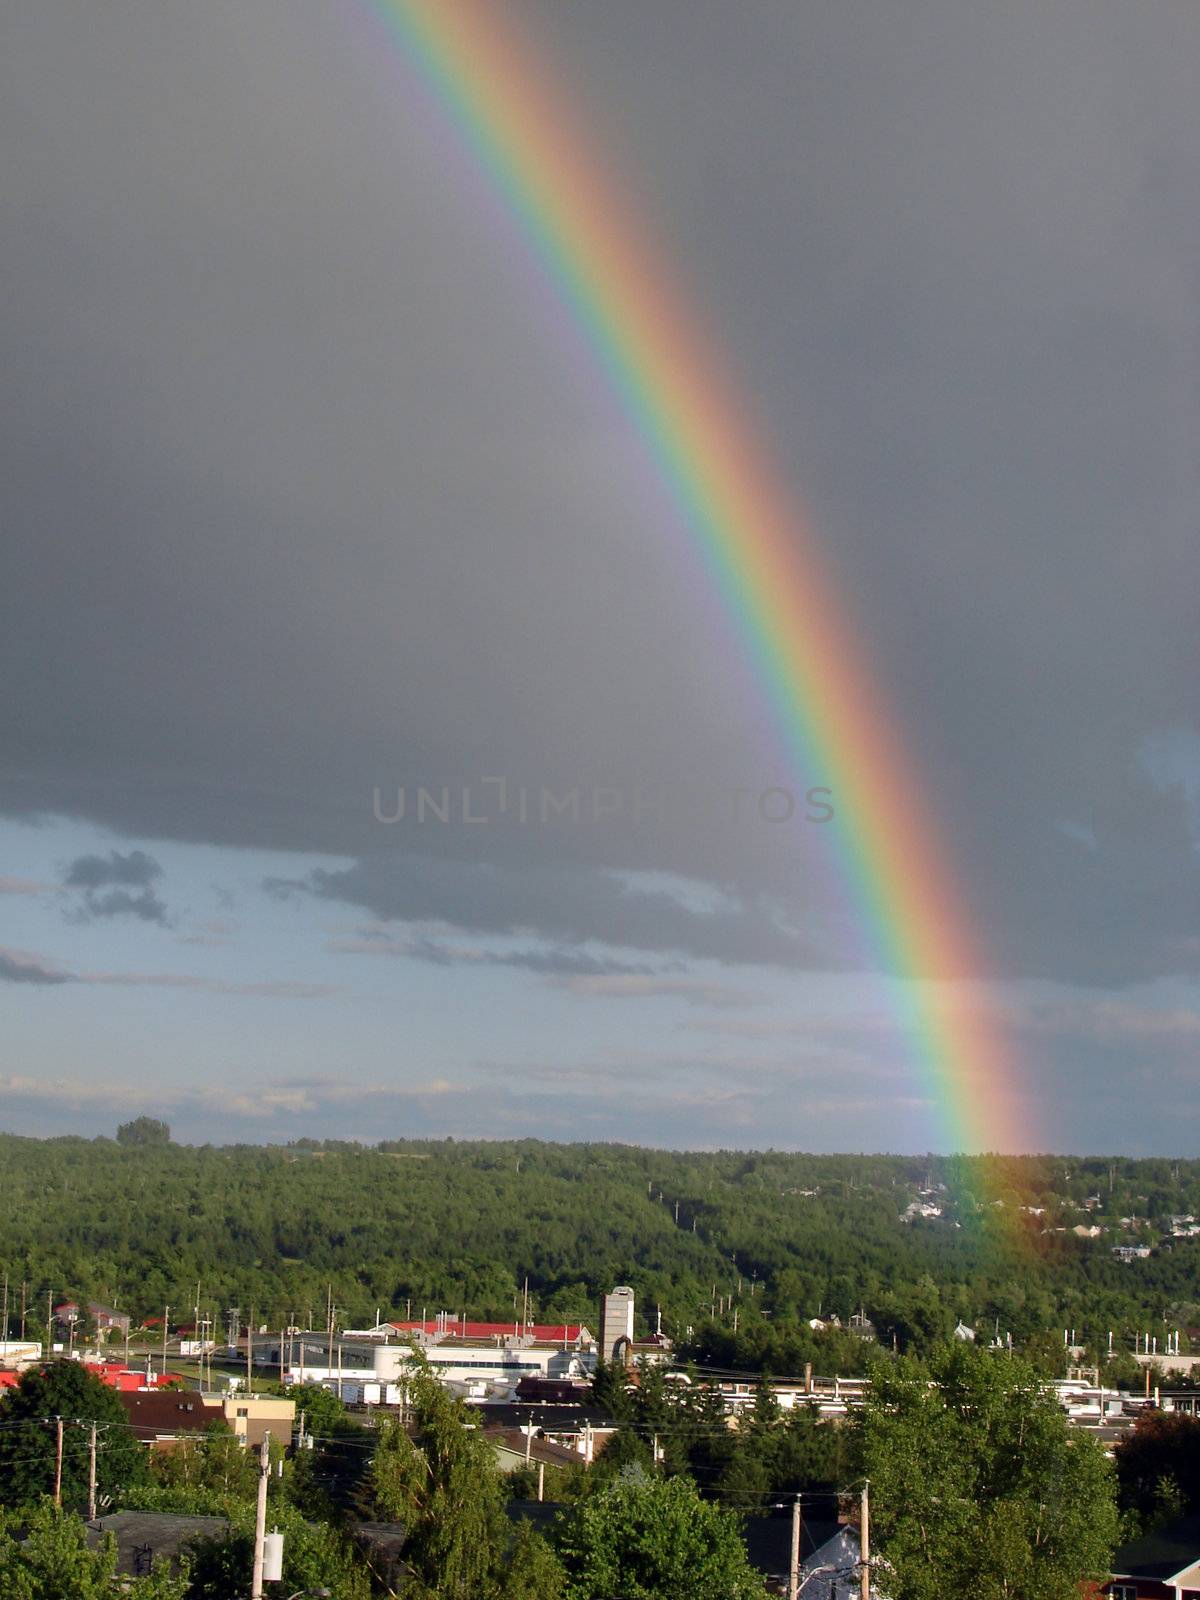 Rainbow_10 by Thorvis